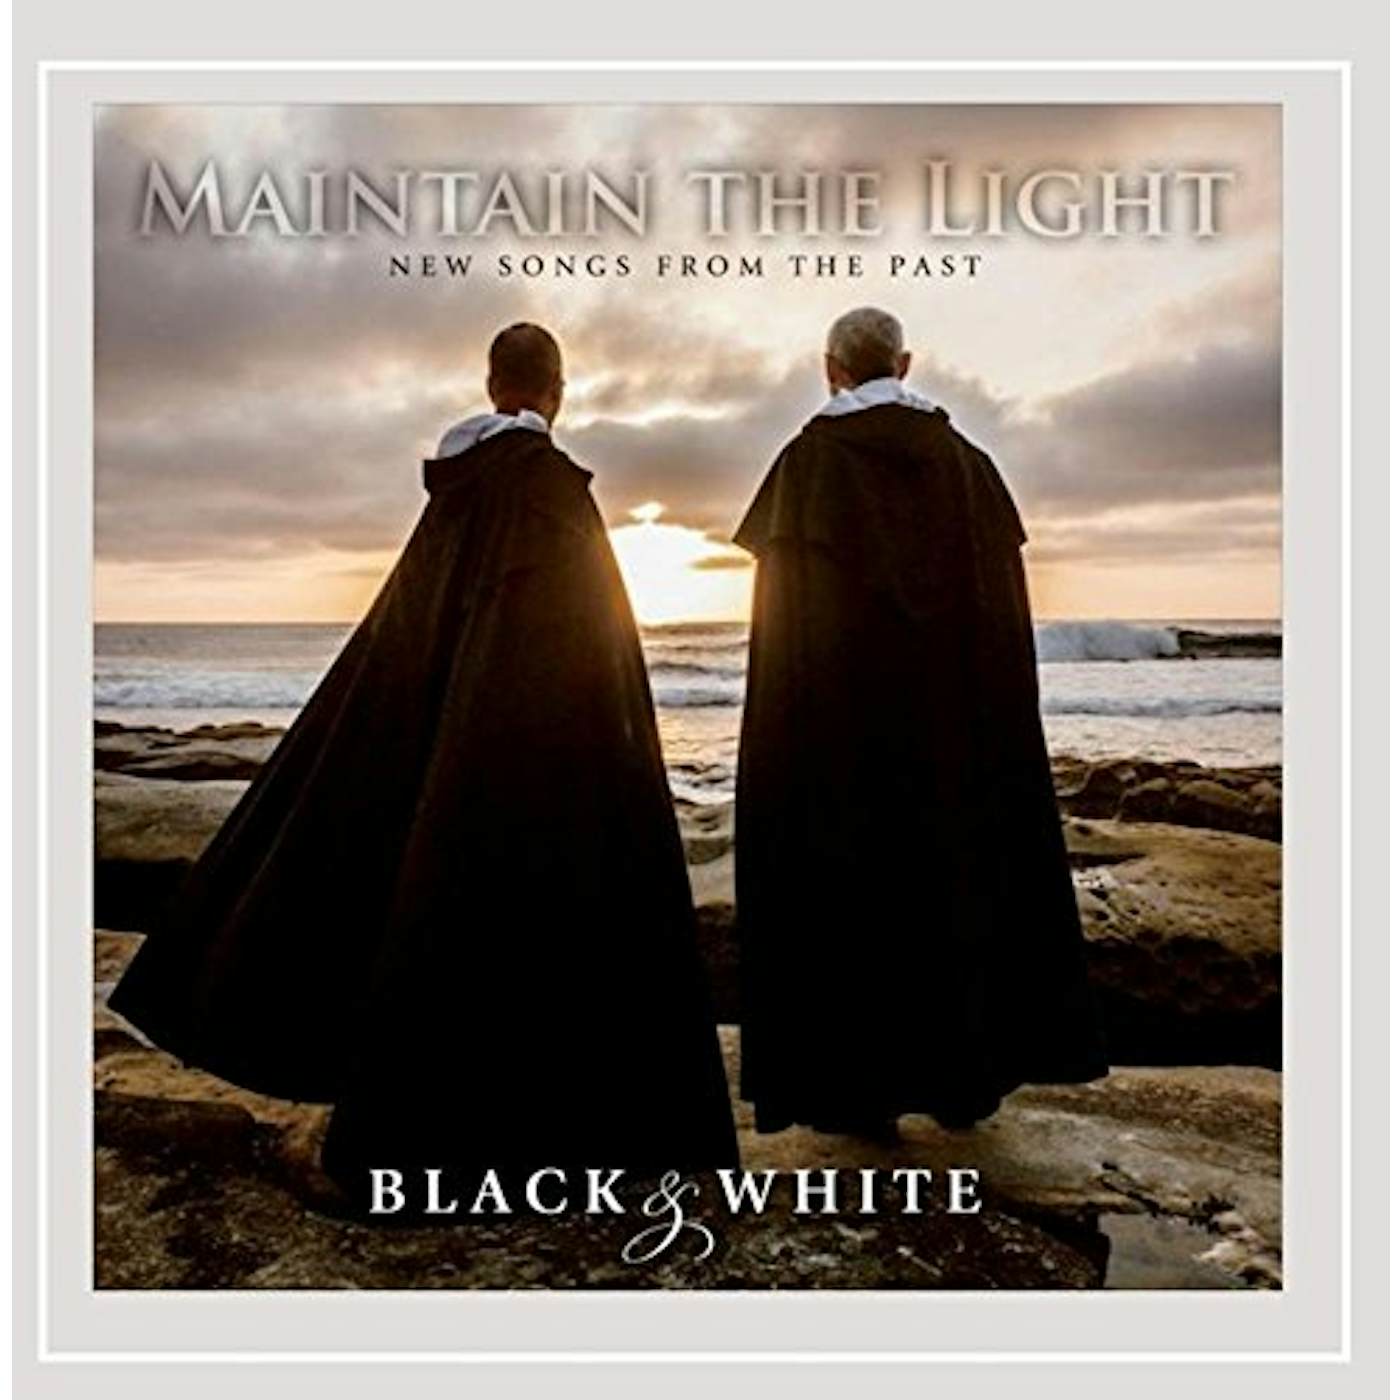 Black & White MAINTAIN THE LIGHT CD